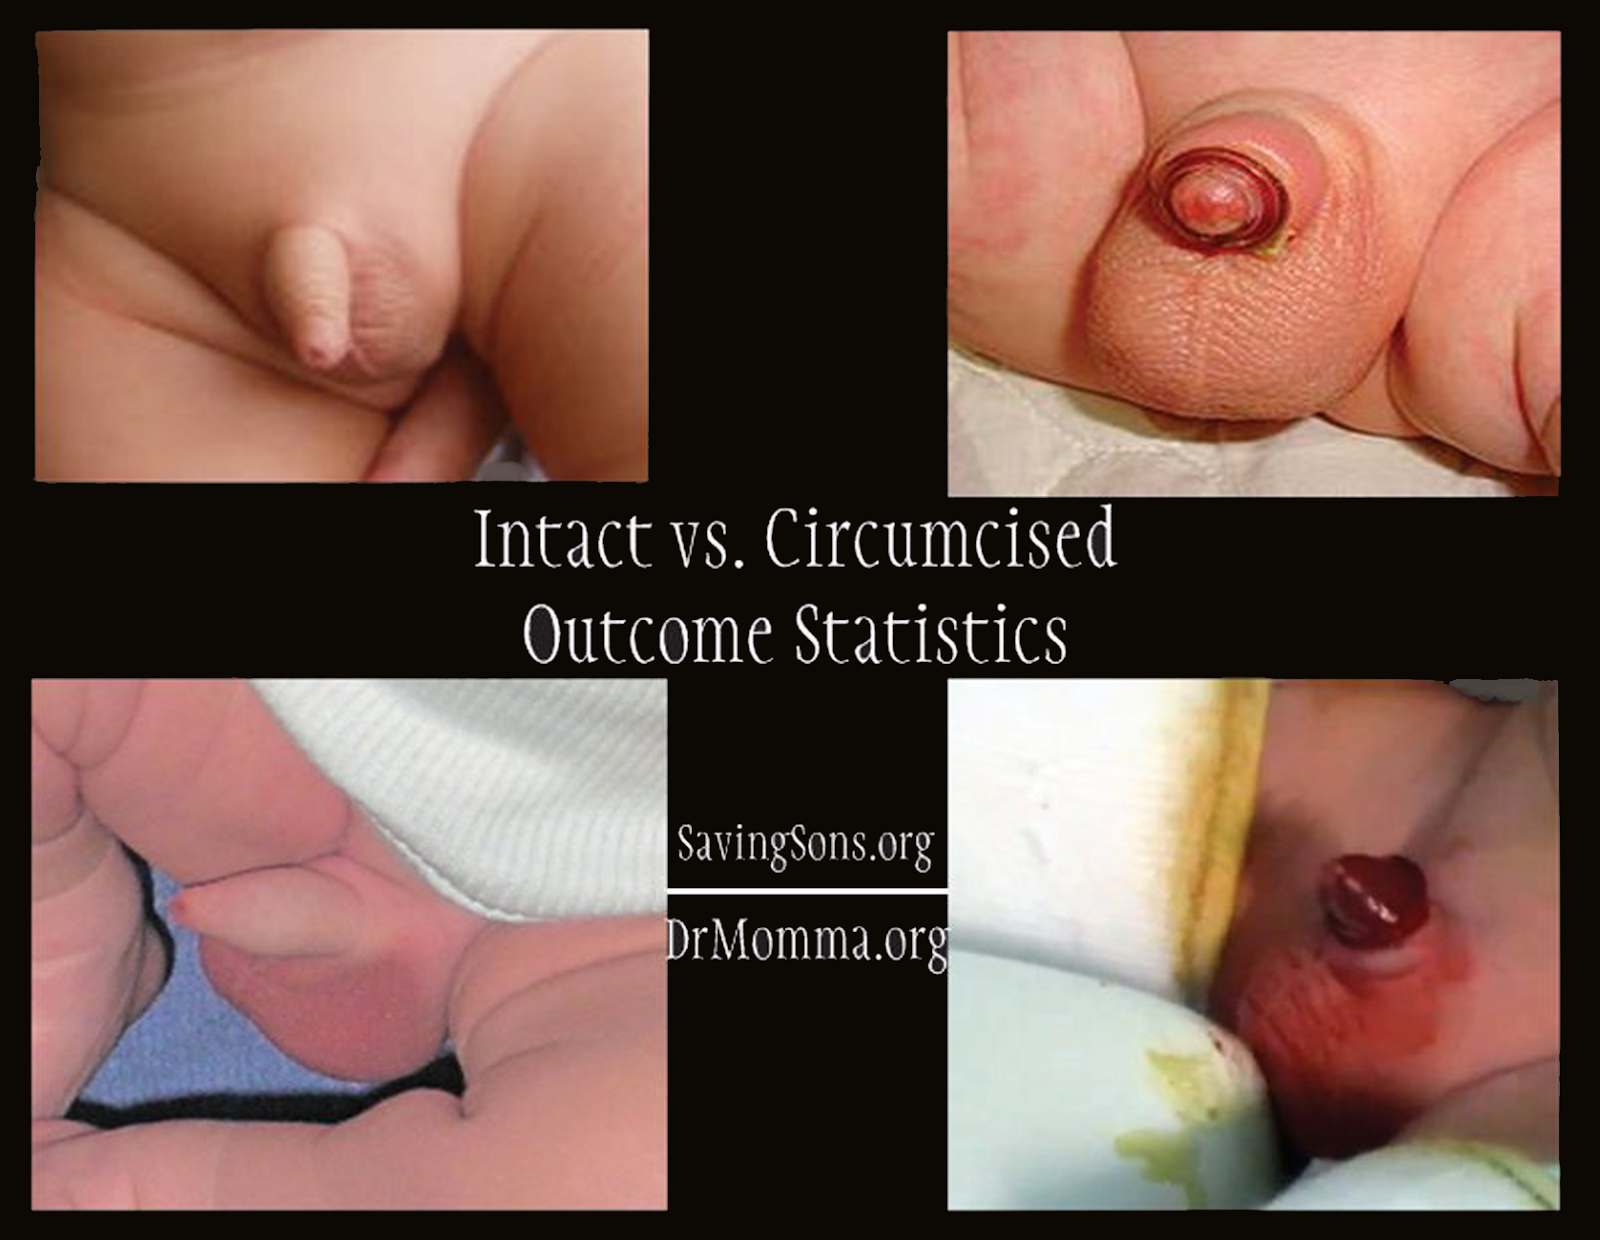 Anti circumcision celebrities